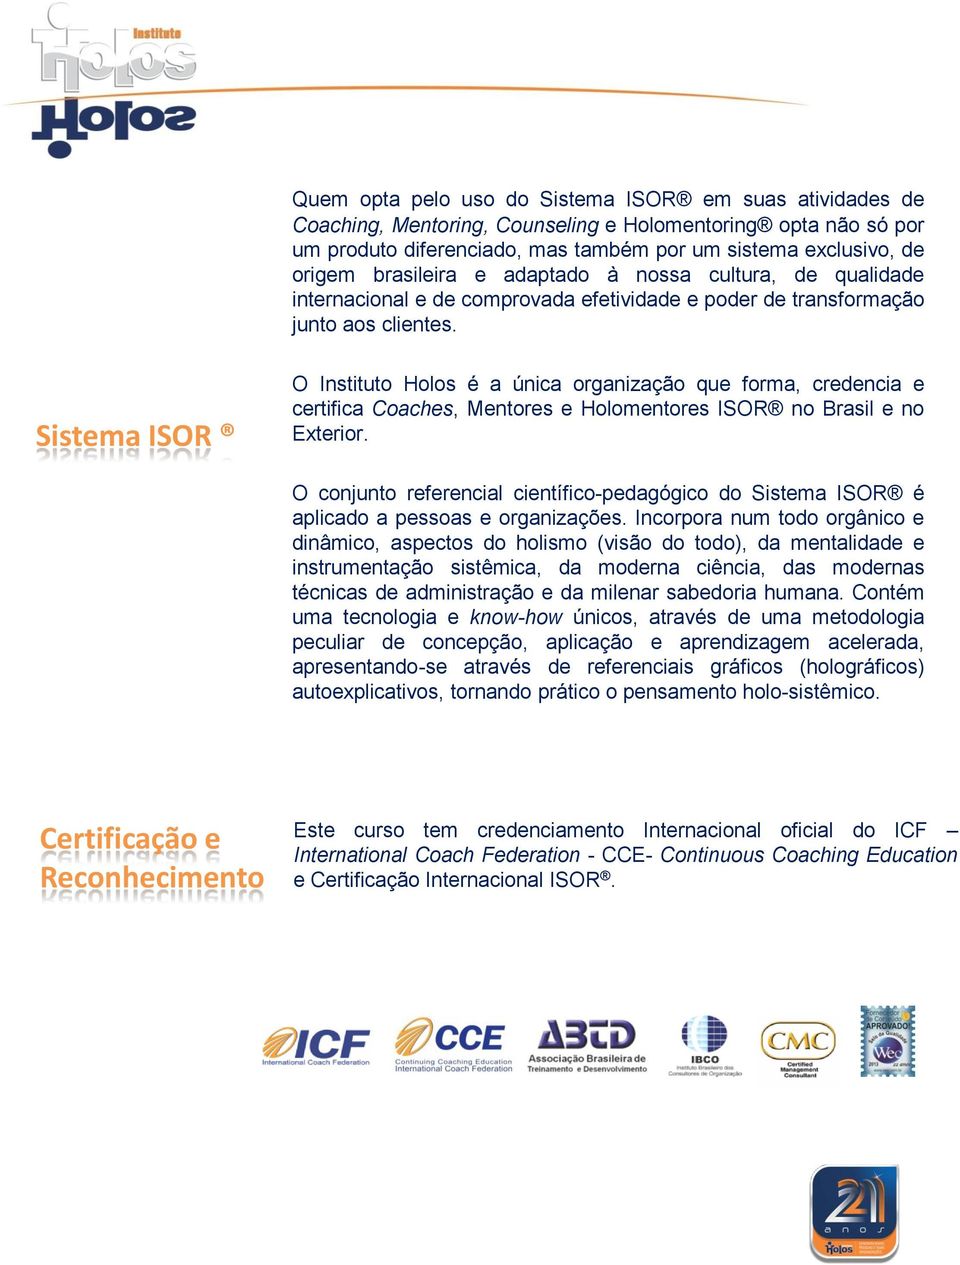 Sistema ISOR O Instituto Holos é a única organização que forma, credencia e certifica Coaches, Mentores e Holomentores ISOR no Brasil e no Exterior.